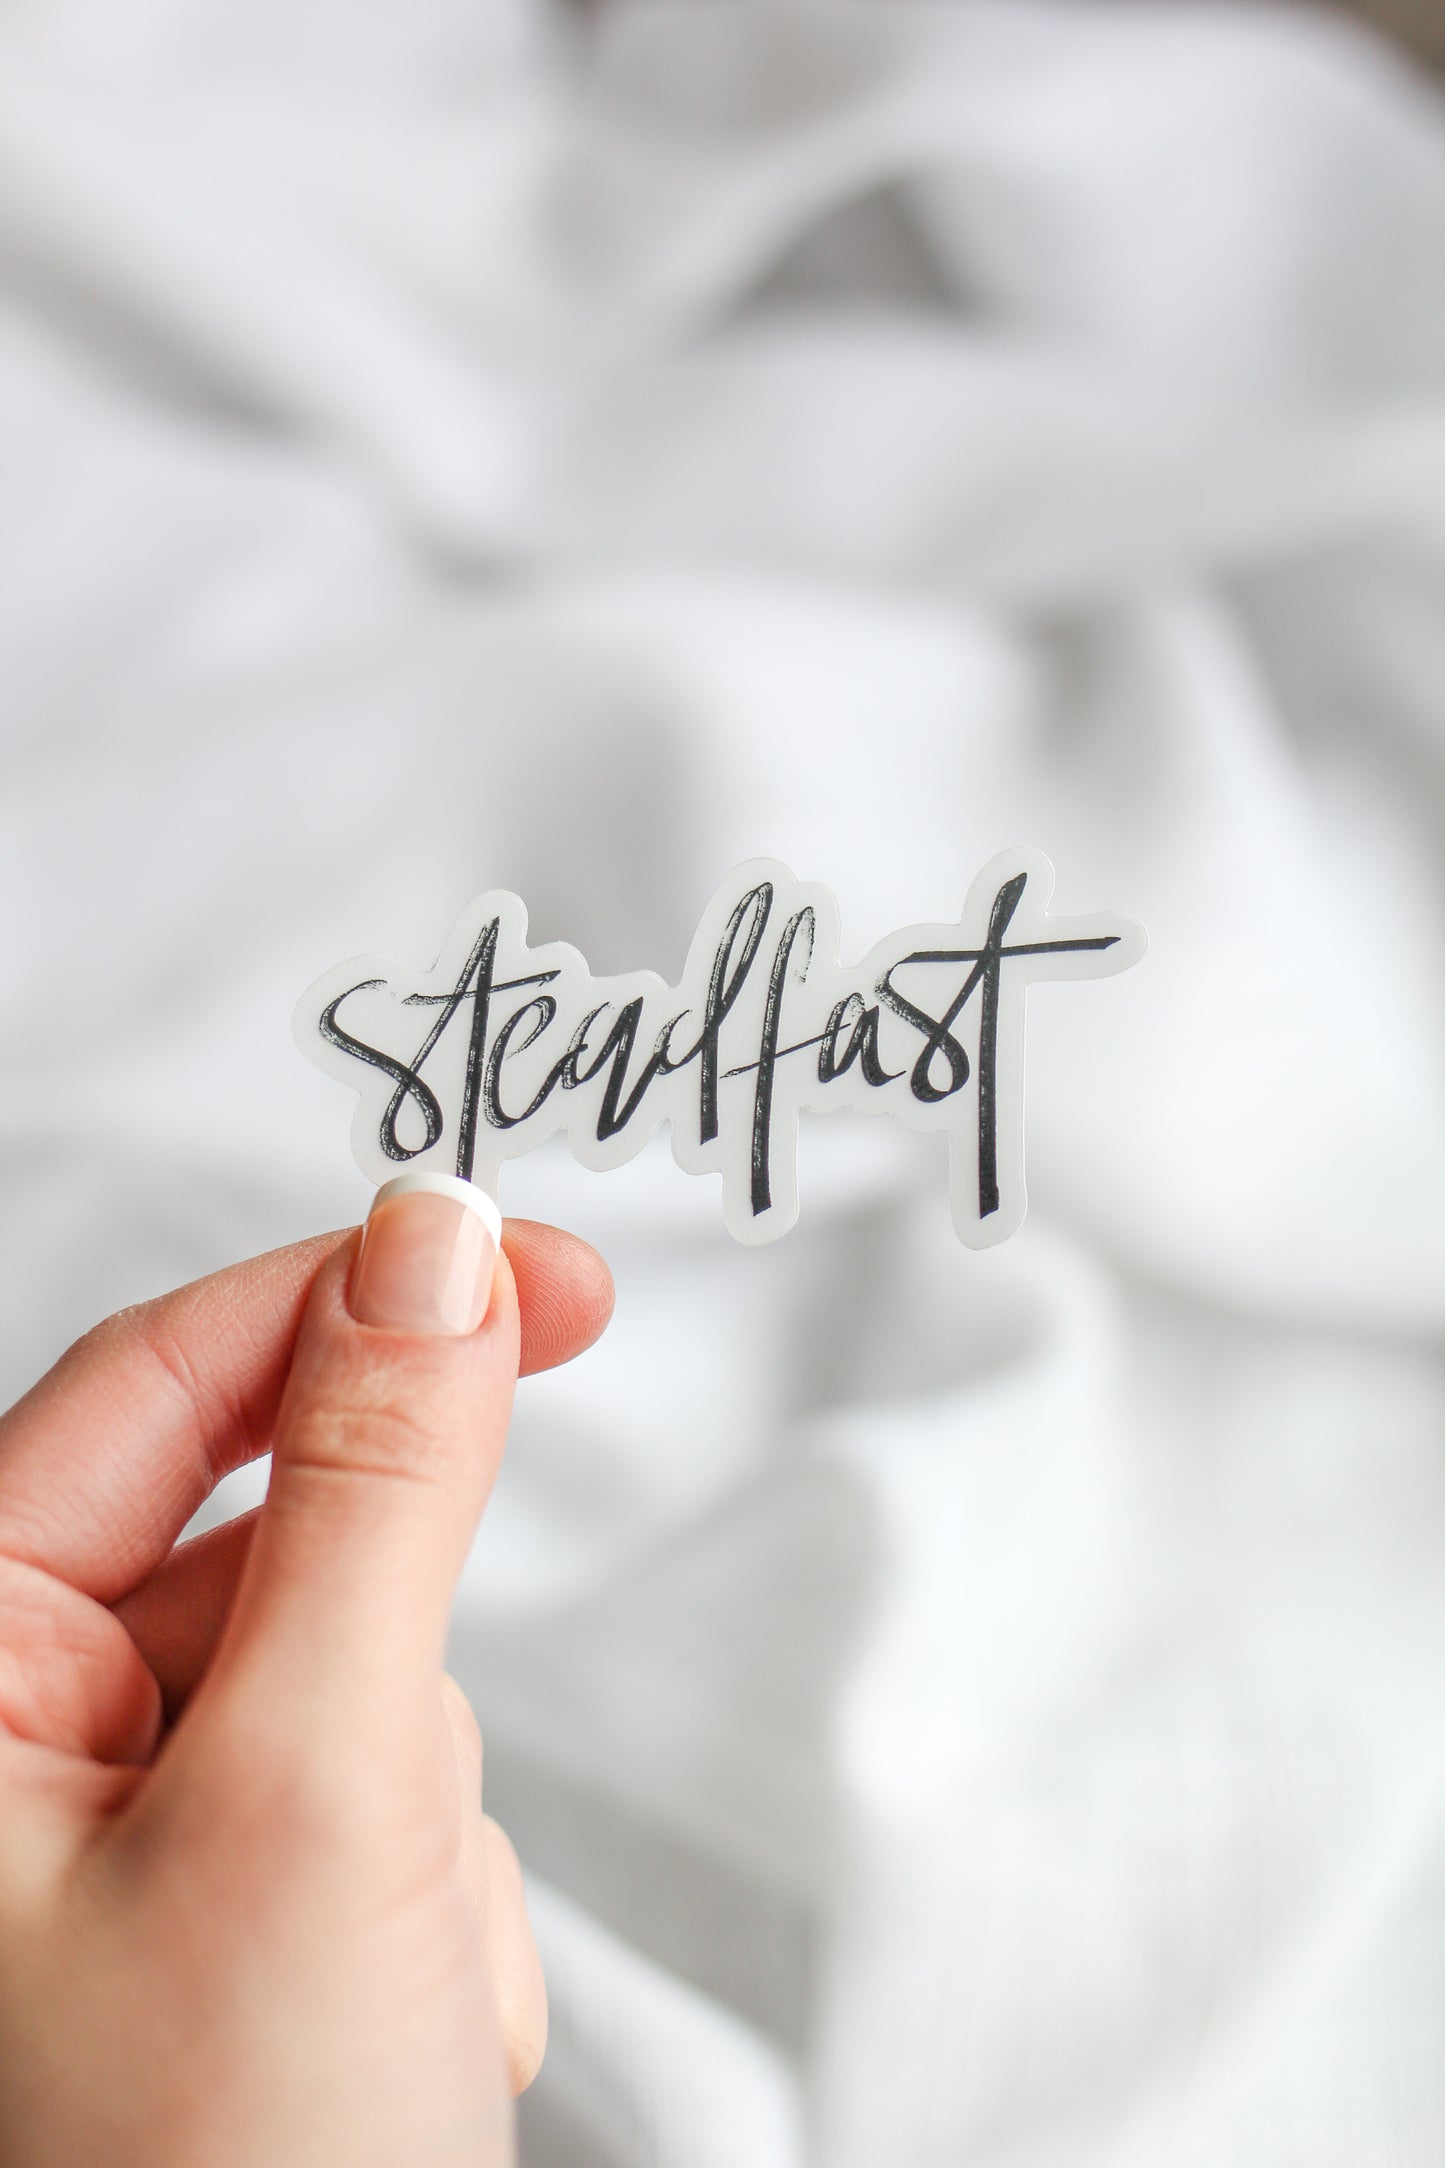 “Steadfast” clear sticker